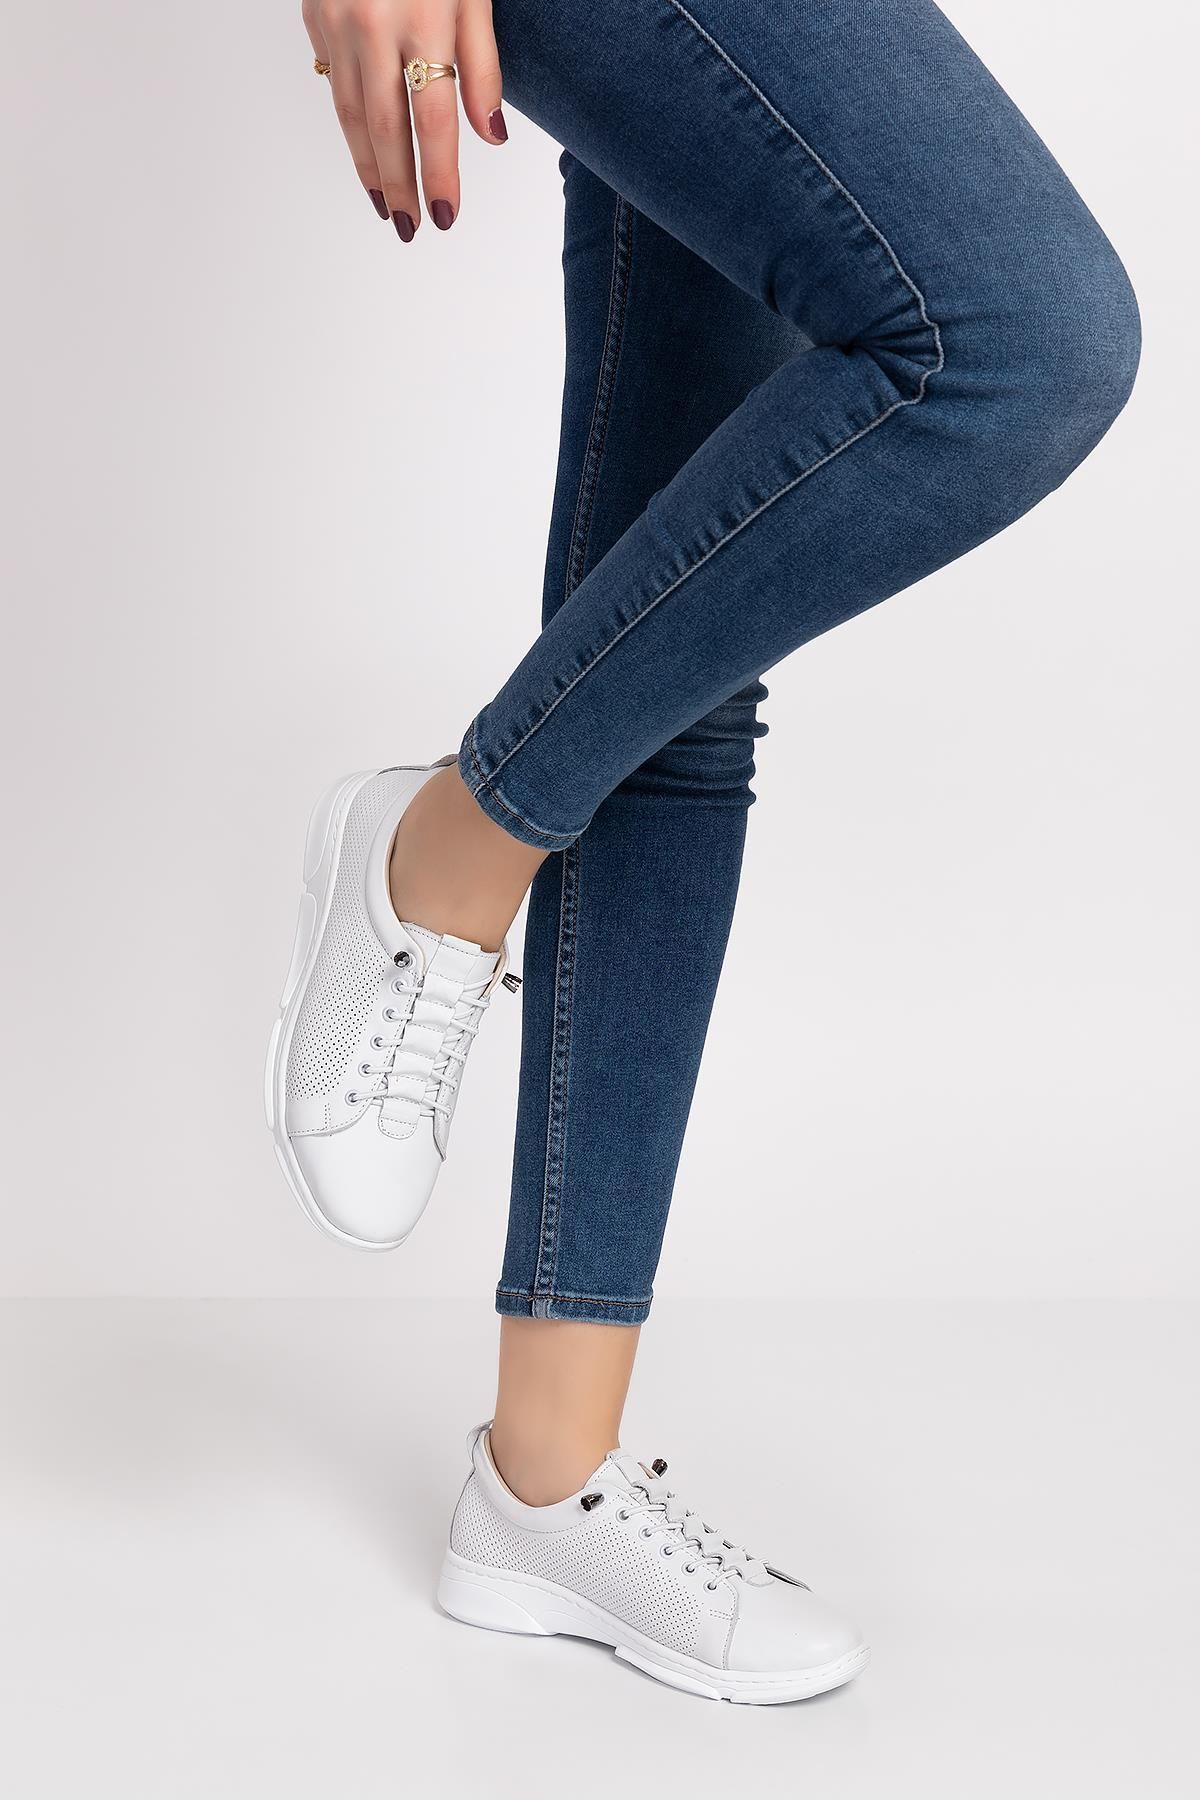 ARTI ARTI AYAKKABI Kadın Hakiki Deri Ortopedik Beyaz Sneaker Ayakkabı